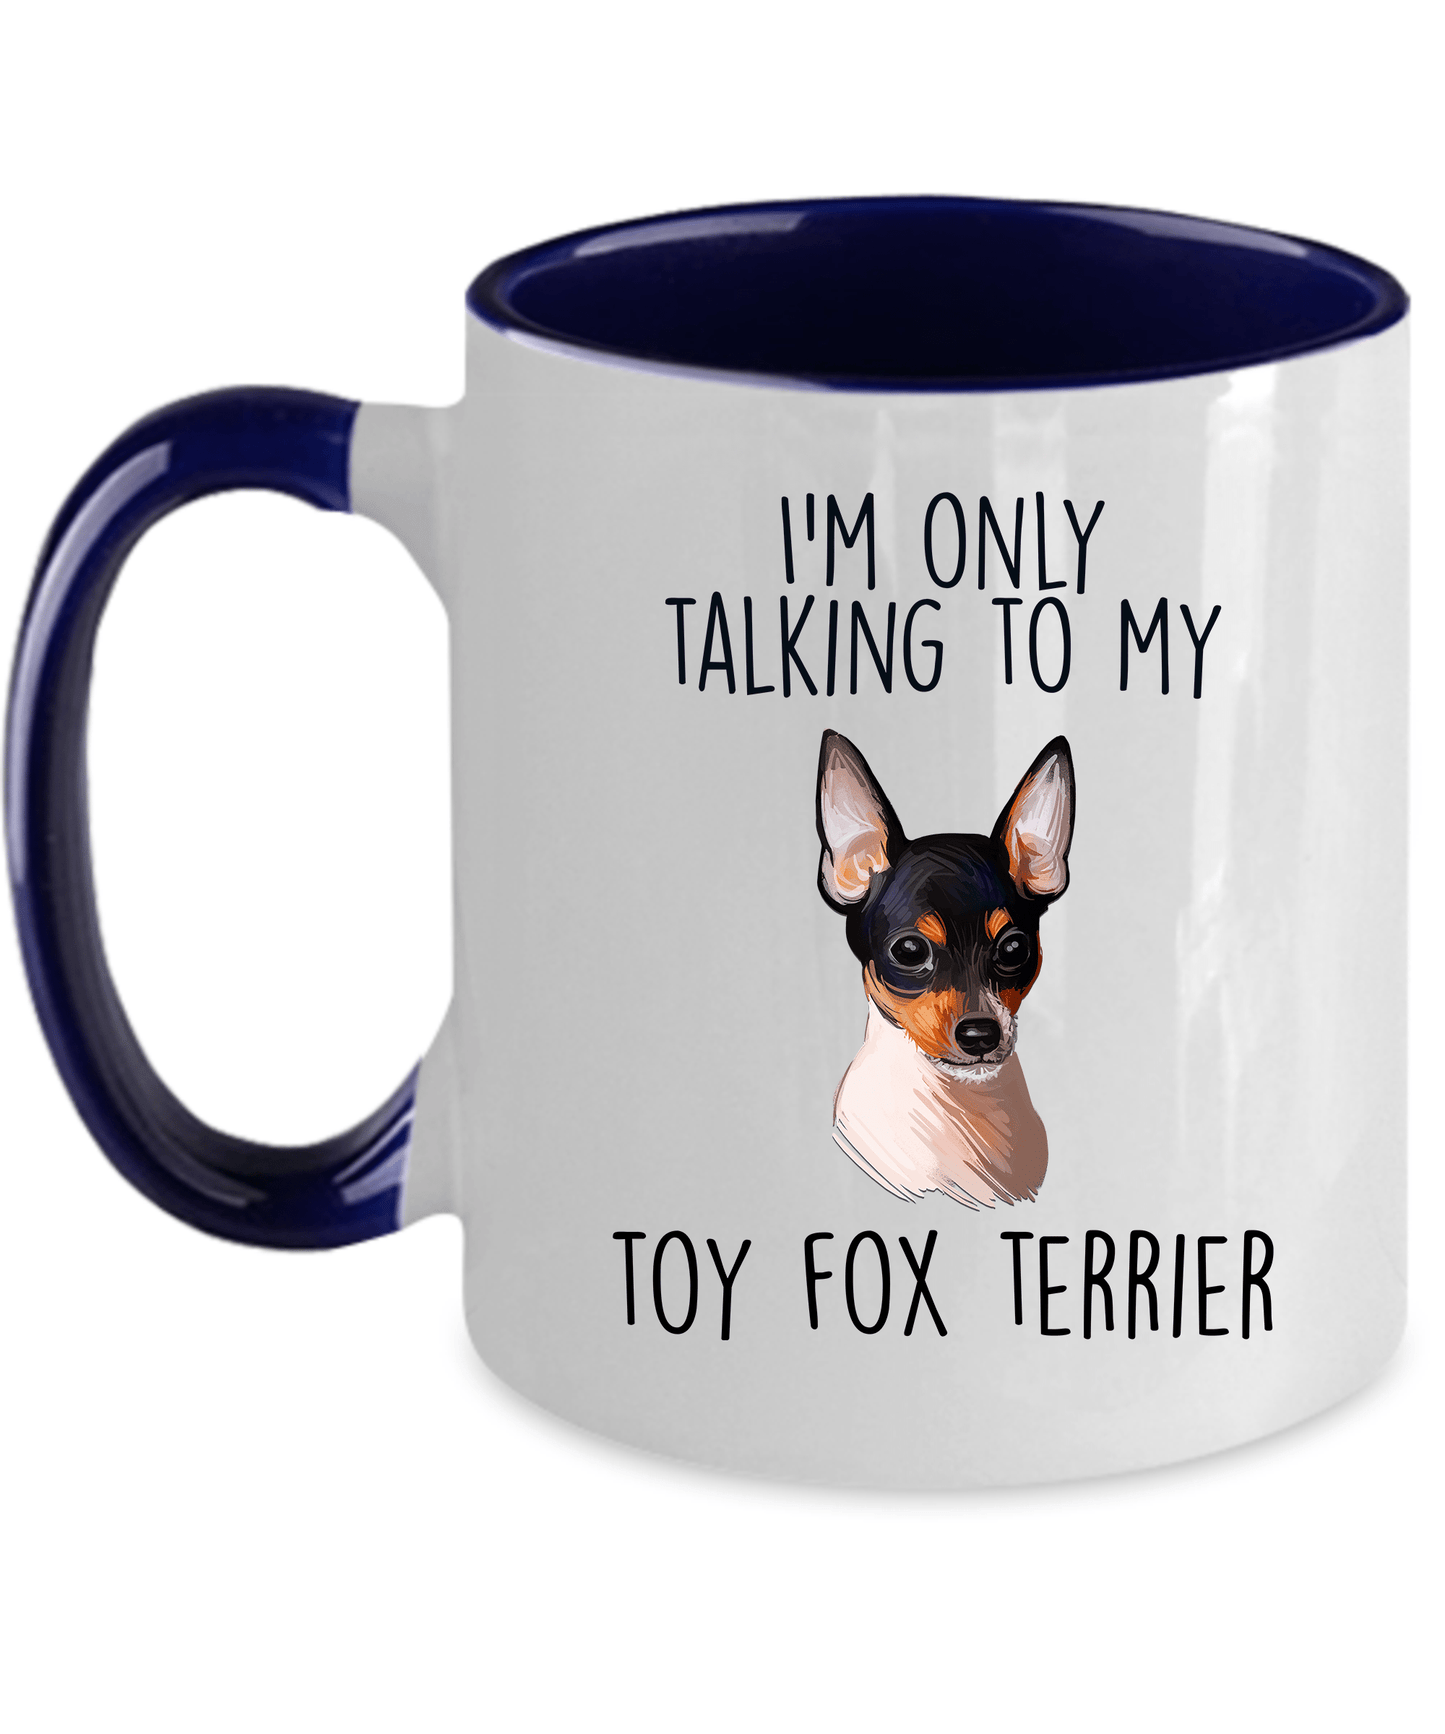 Toy Fox Terrier Dog Coffee Mug